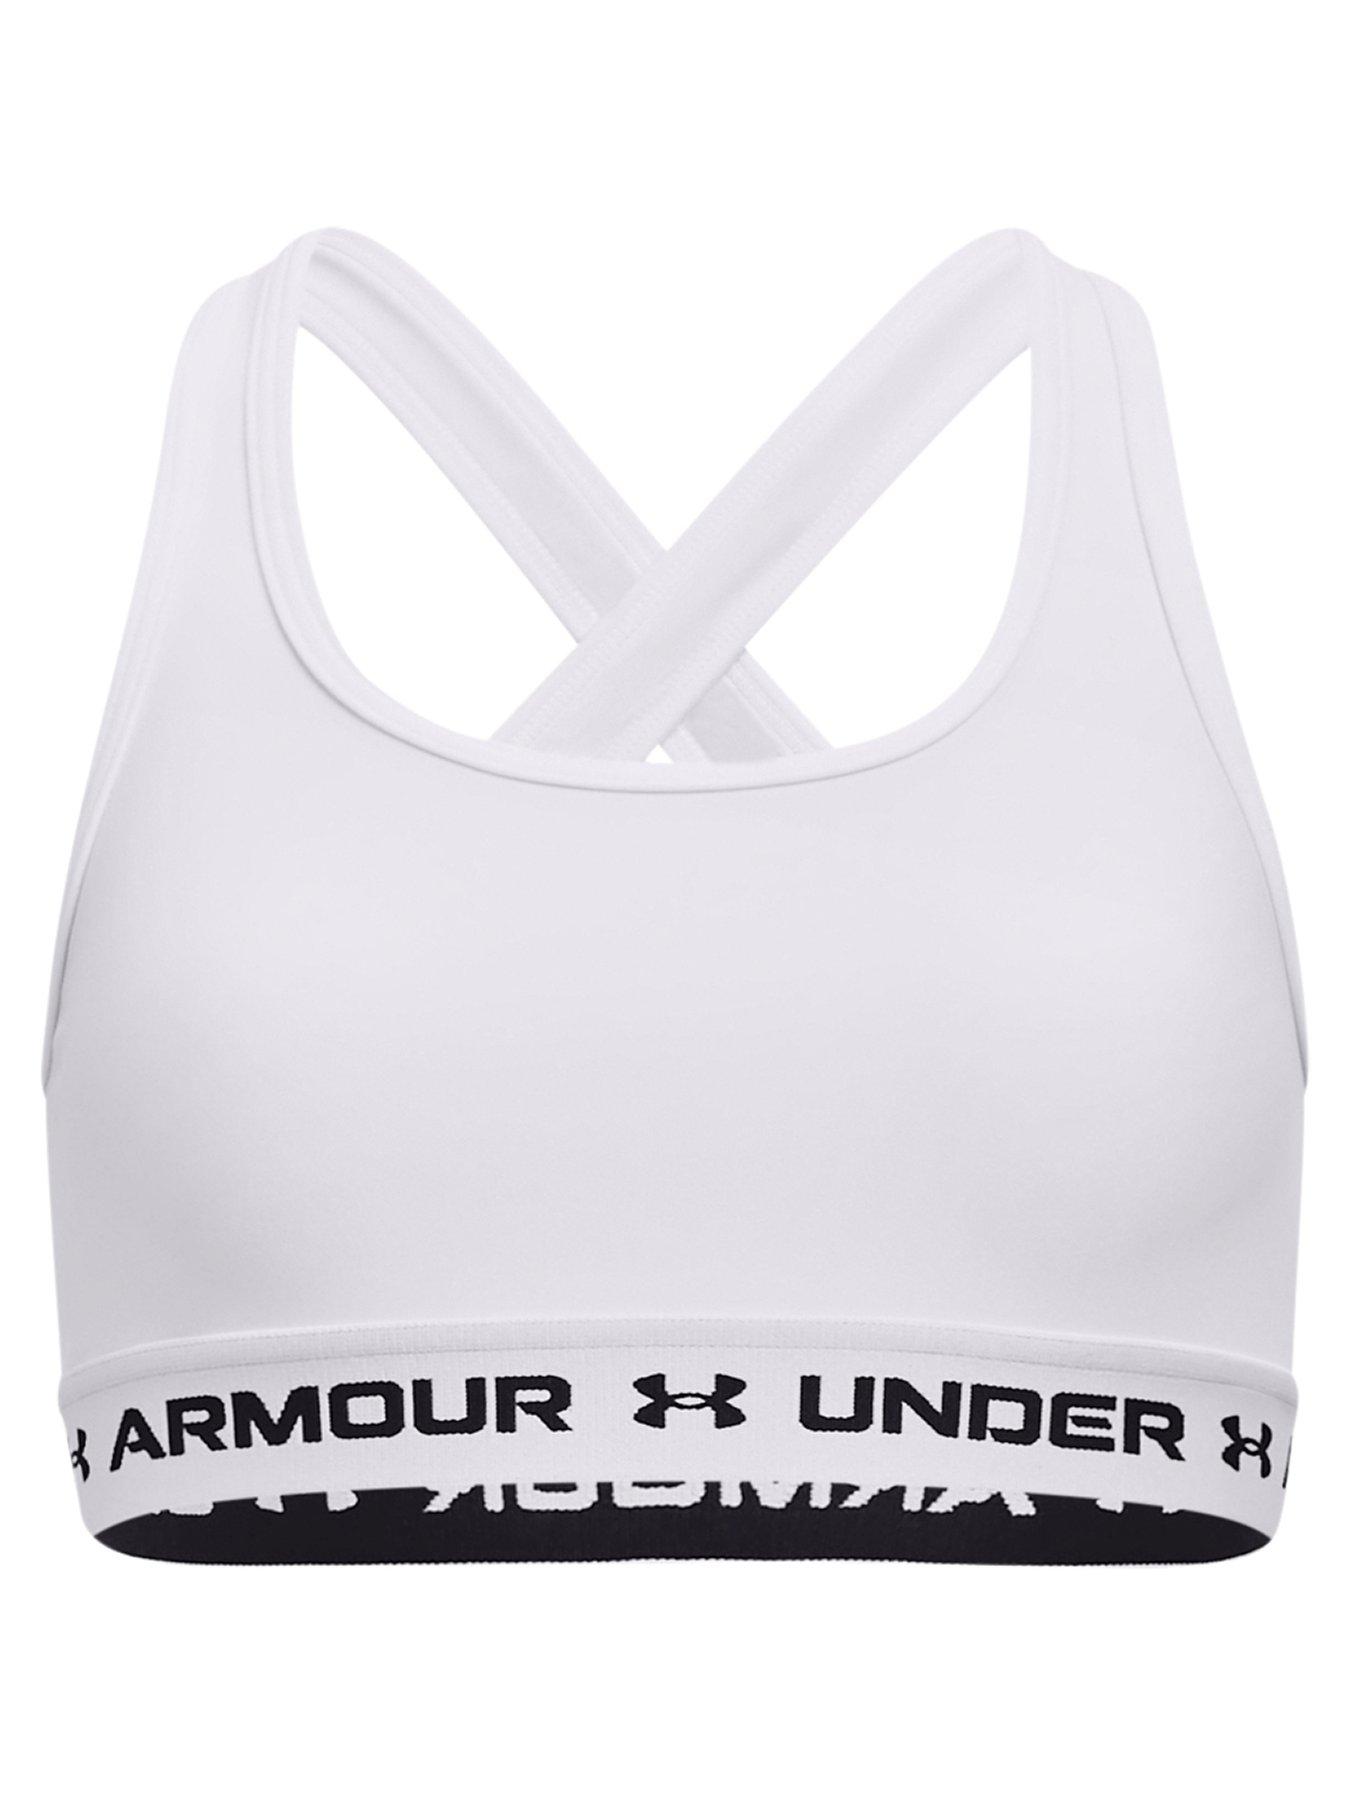 Under armour, Sports bras, Sportswear, Child & baby